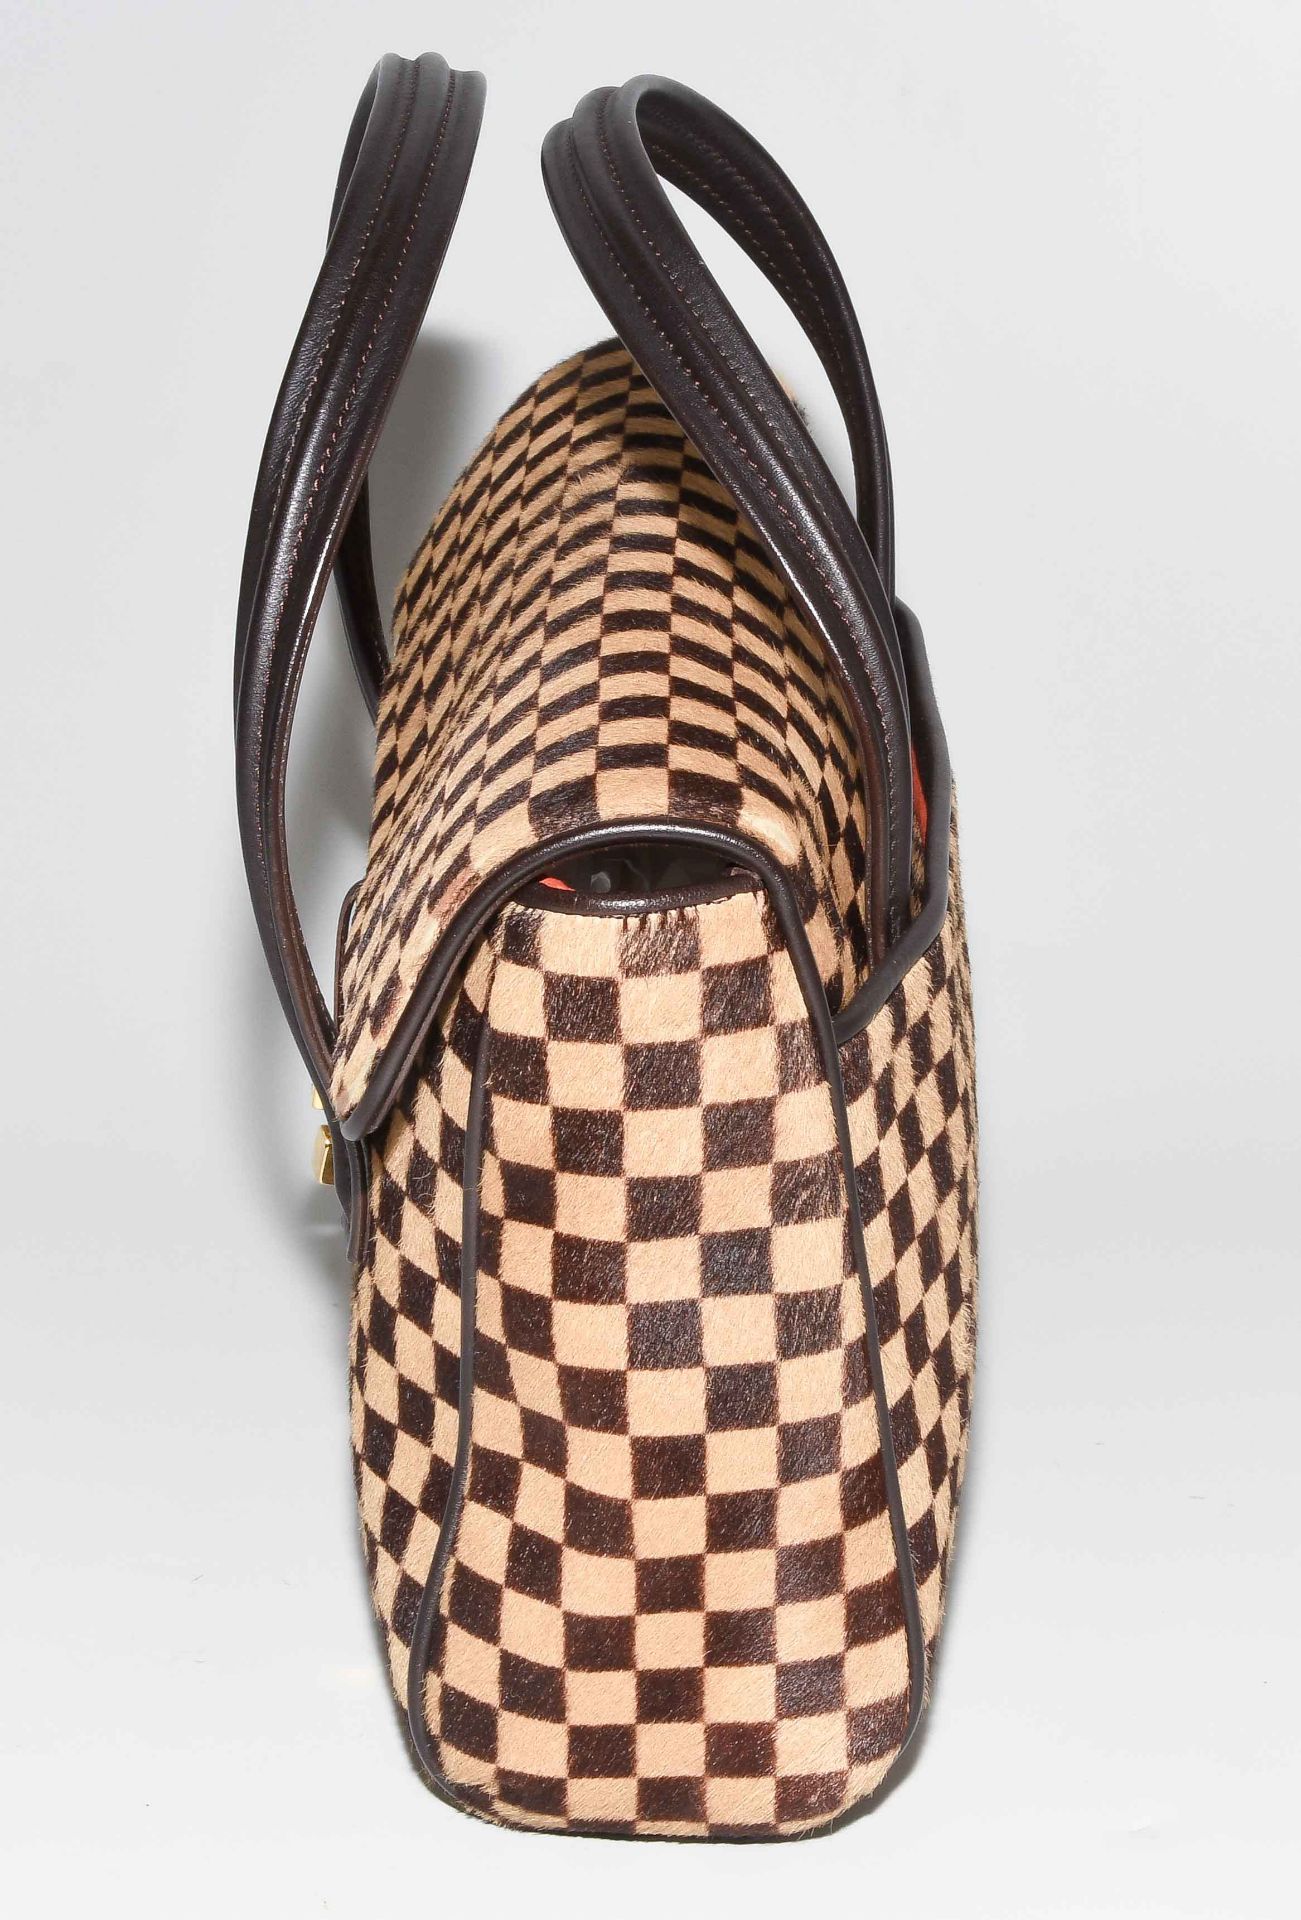 Louis Vuitton, Handtasche "Lionne" - Bild 3 aus 14